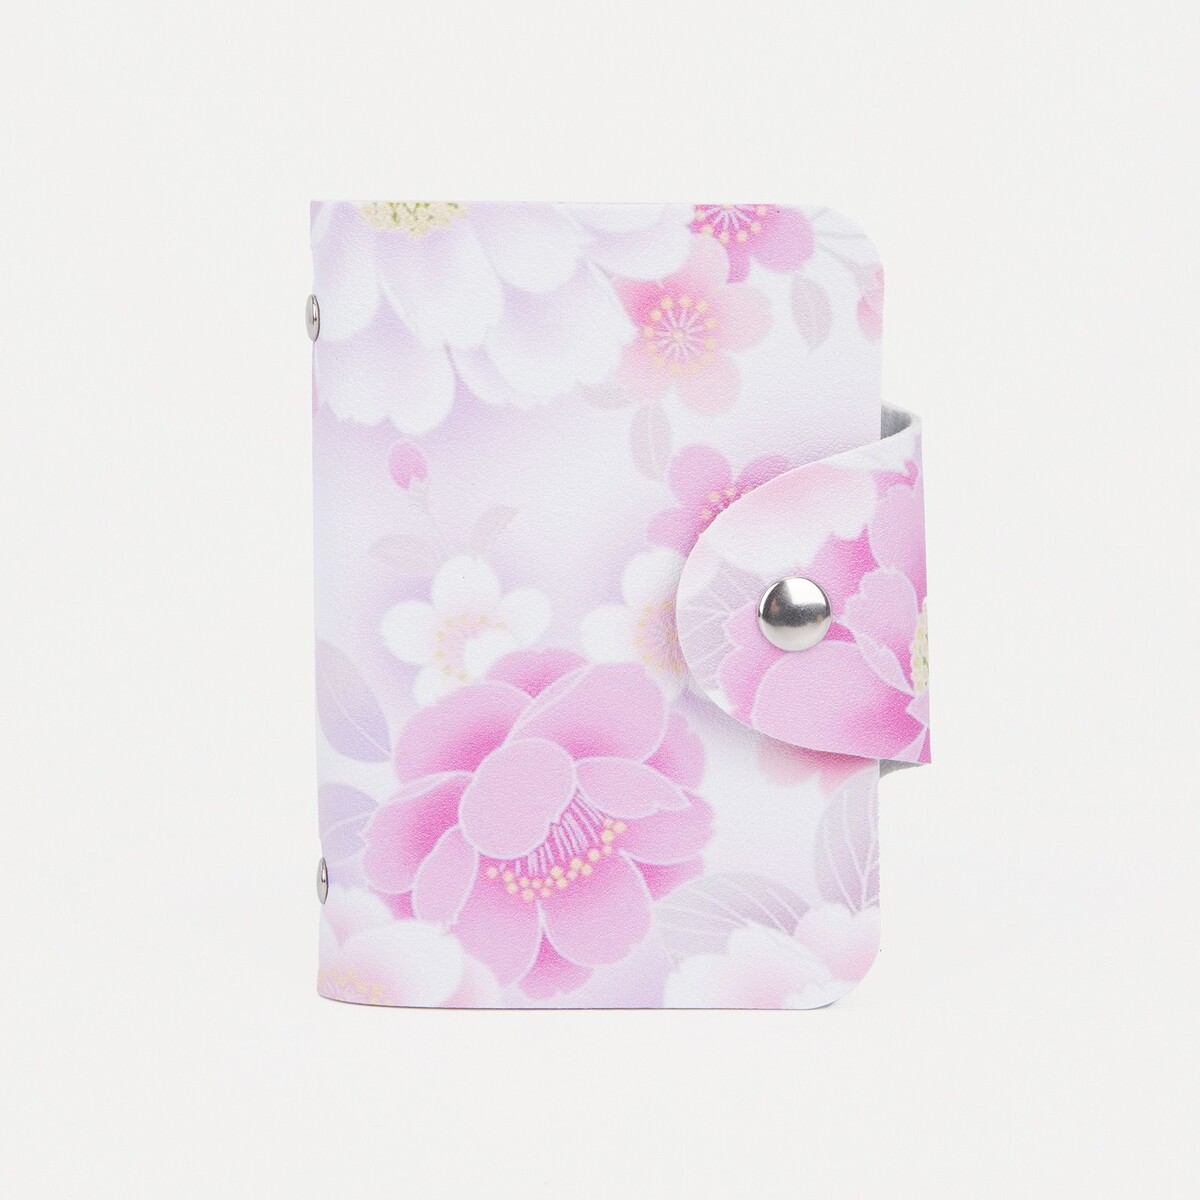 Визитница на кнопке, 24 карты, цвет белый/розовый визитница butterfly розовая 24 карты 11 x 7 5 см